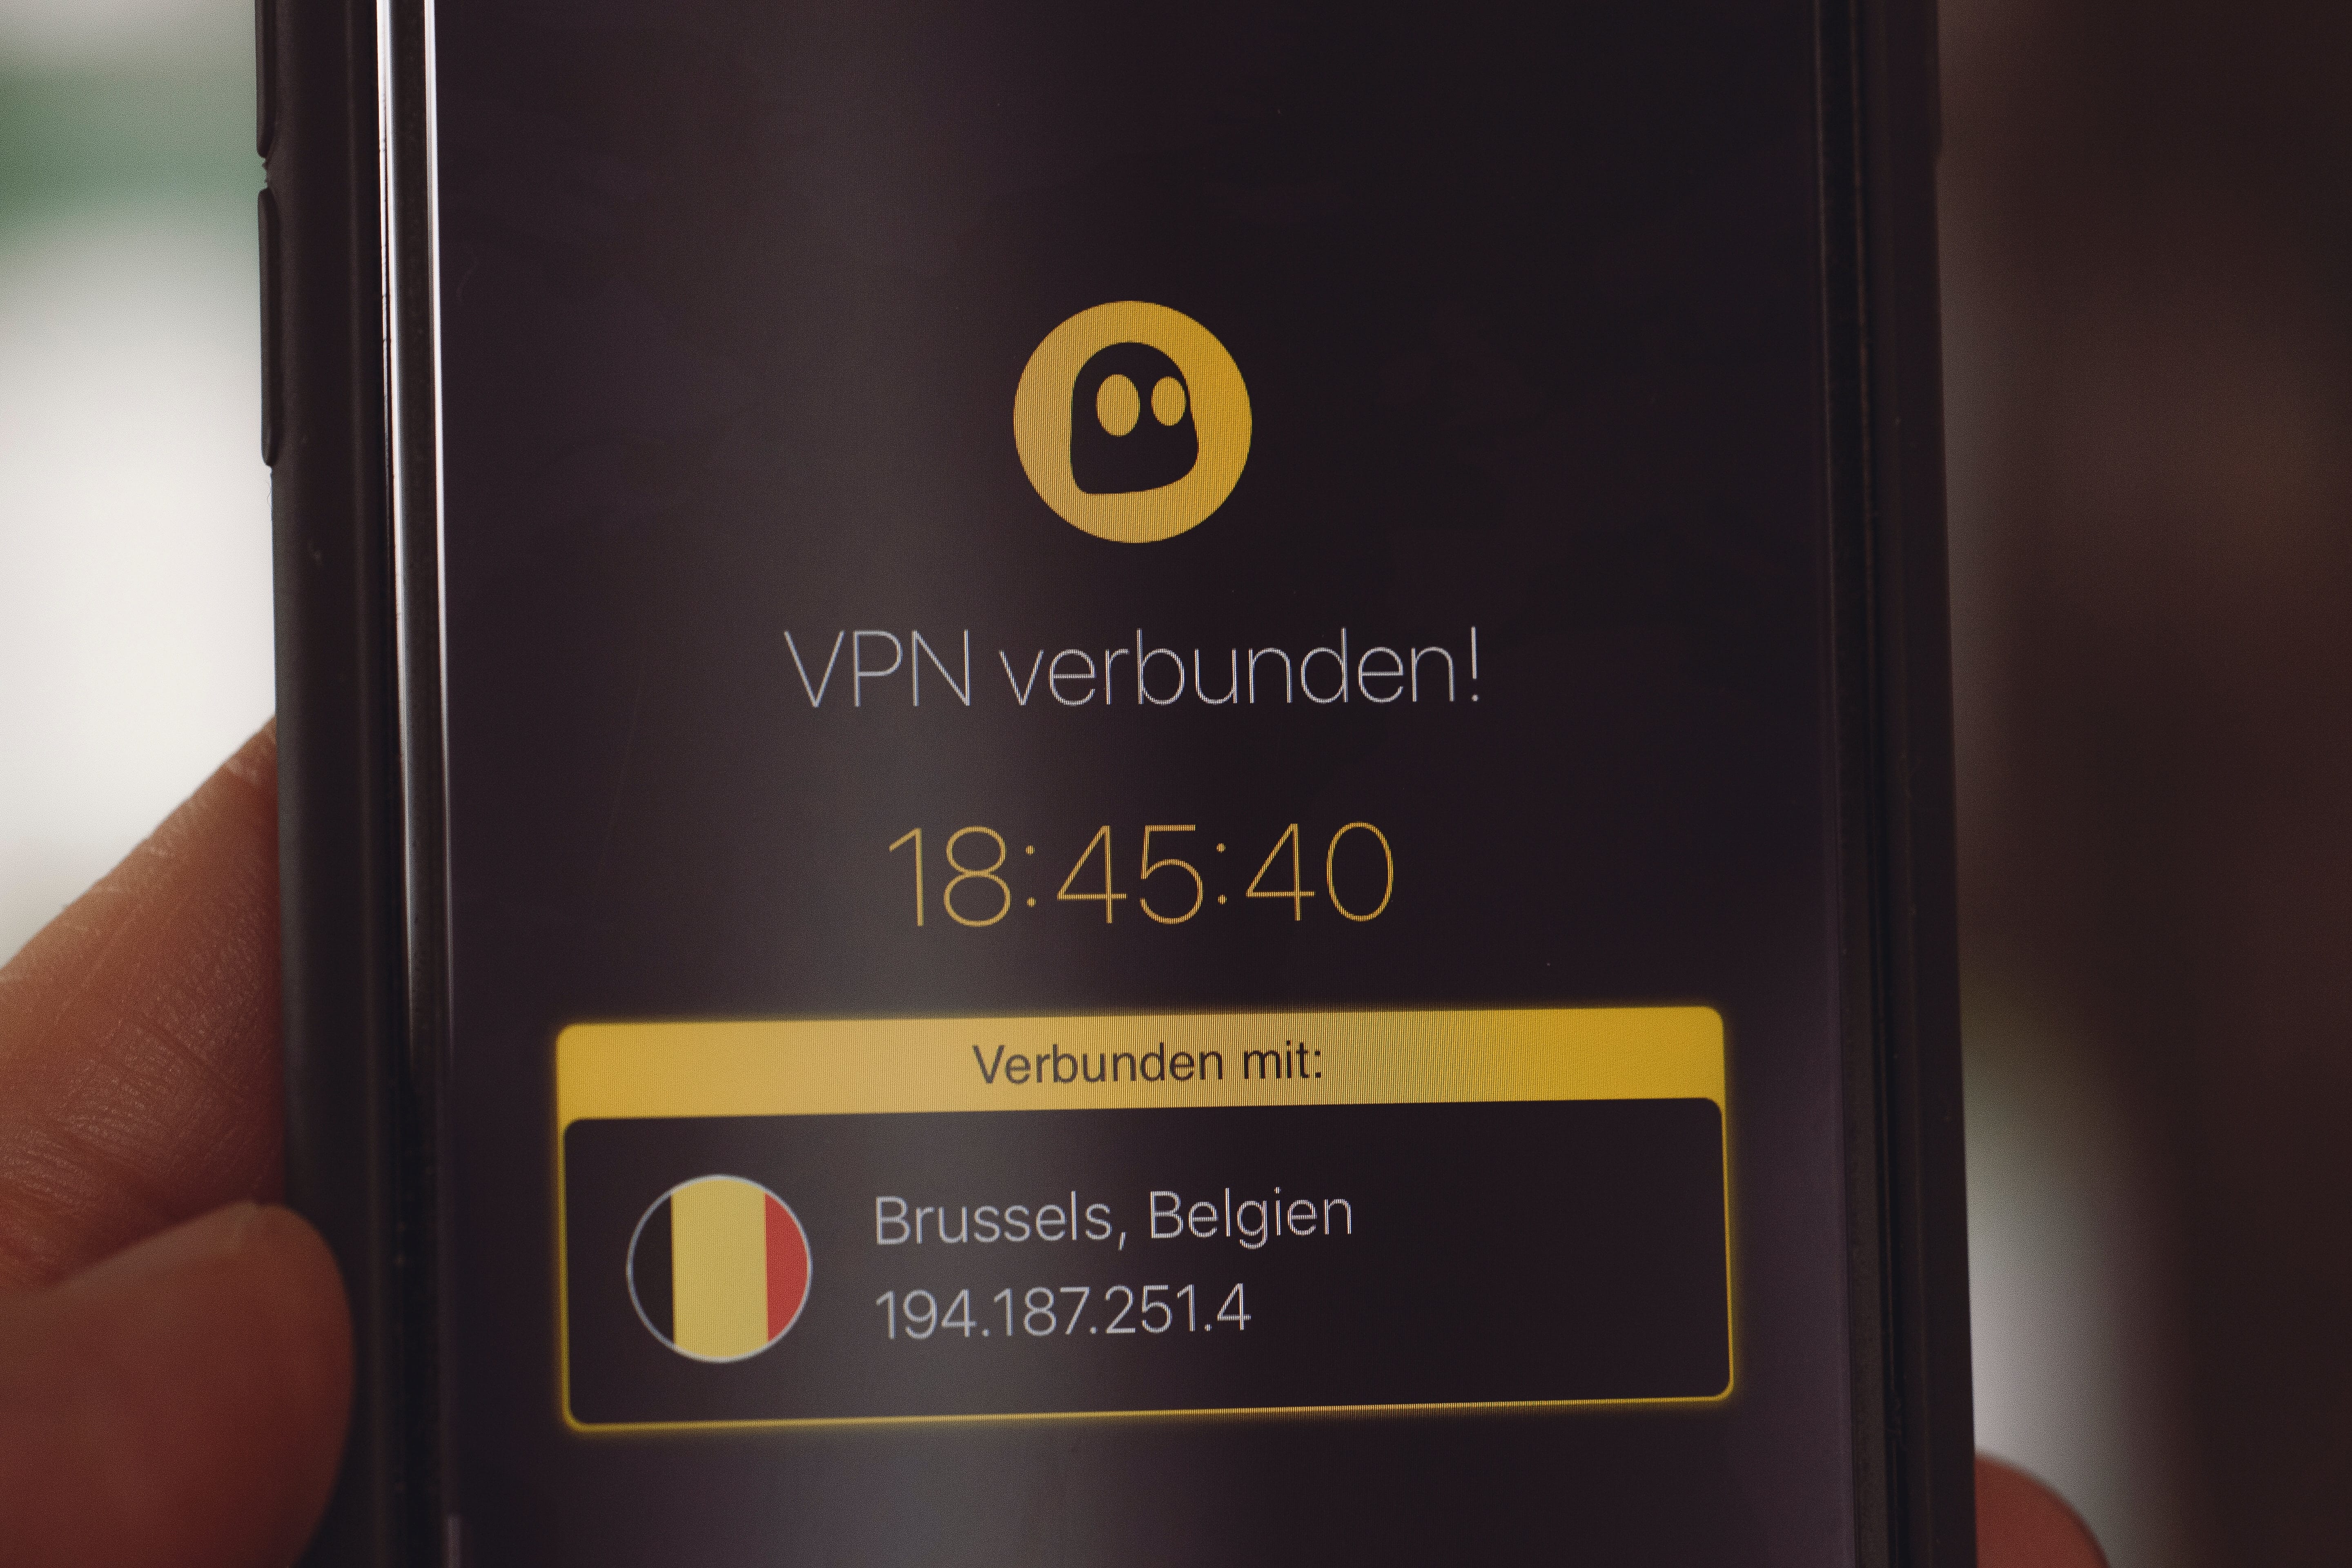 Smartphone with “VPN verbunden” (“VPN connected”) on screen; image by Markus Spiske, via Unsplash.com.